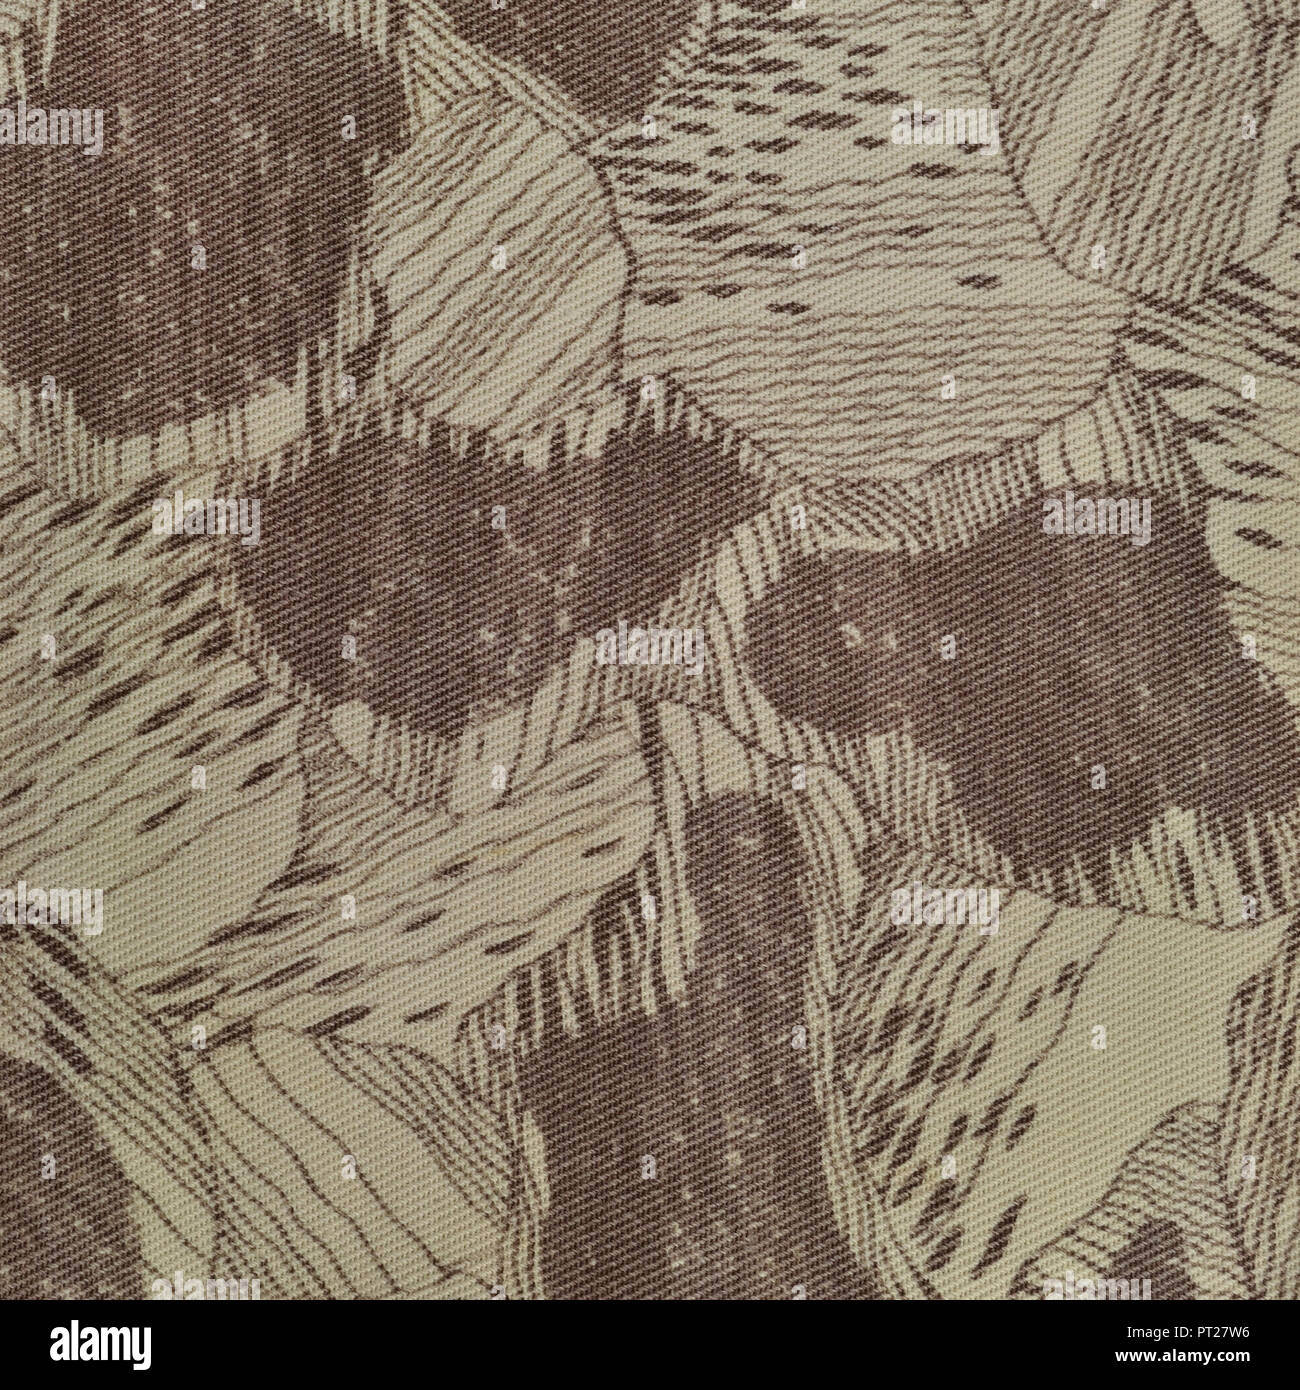 Benutzerdefinierte camouflage Textur muster vertikaler Blassgrün tan taupe Braun strukturierte camo Hintergrund alten verwitterten Baumwolle Twill-qualität Feldarbeit parka Stockfoto